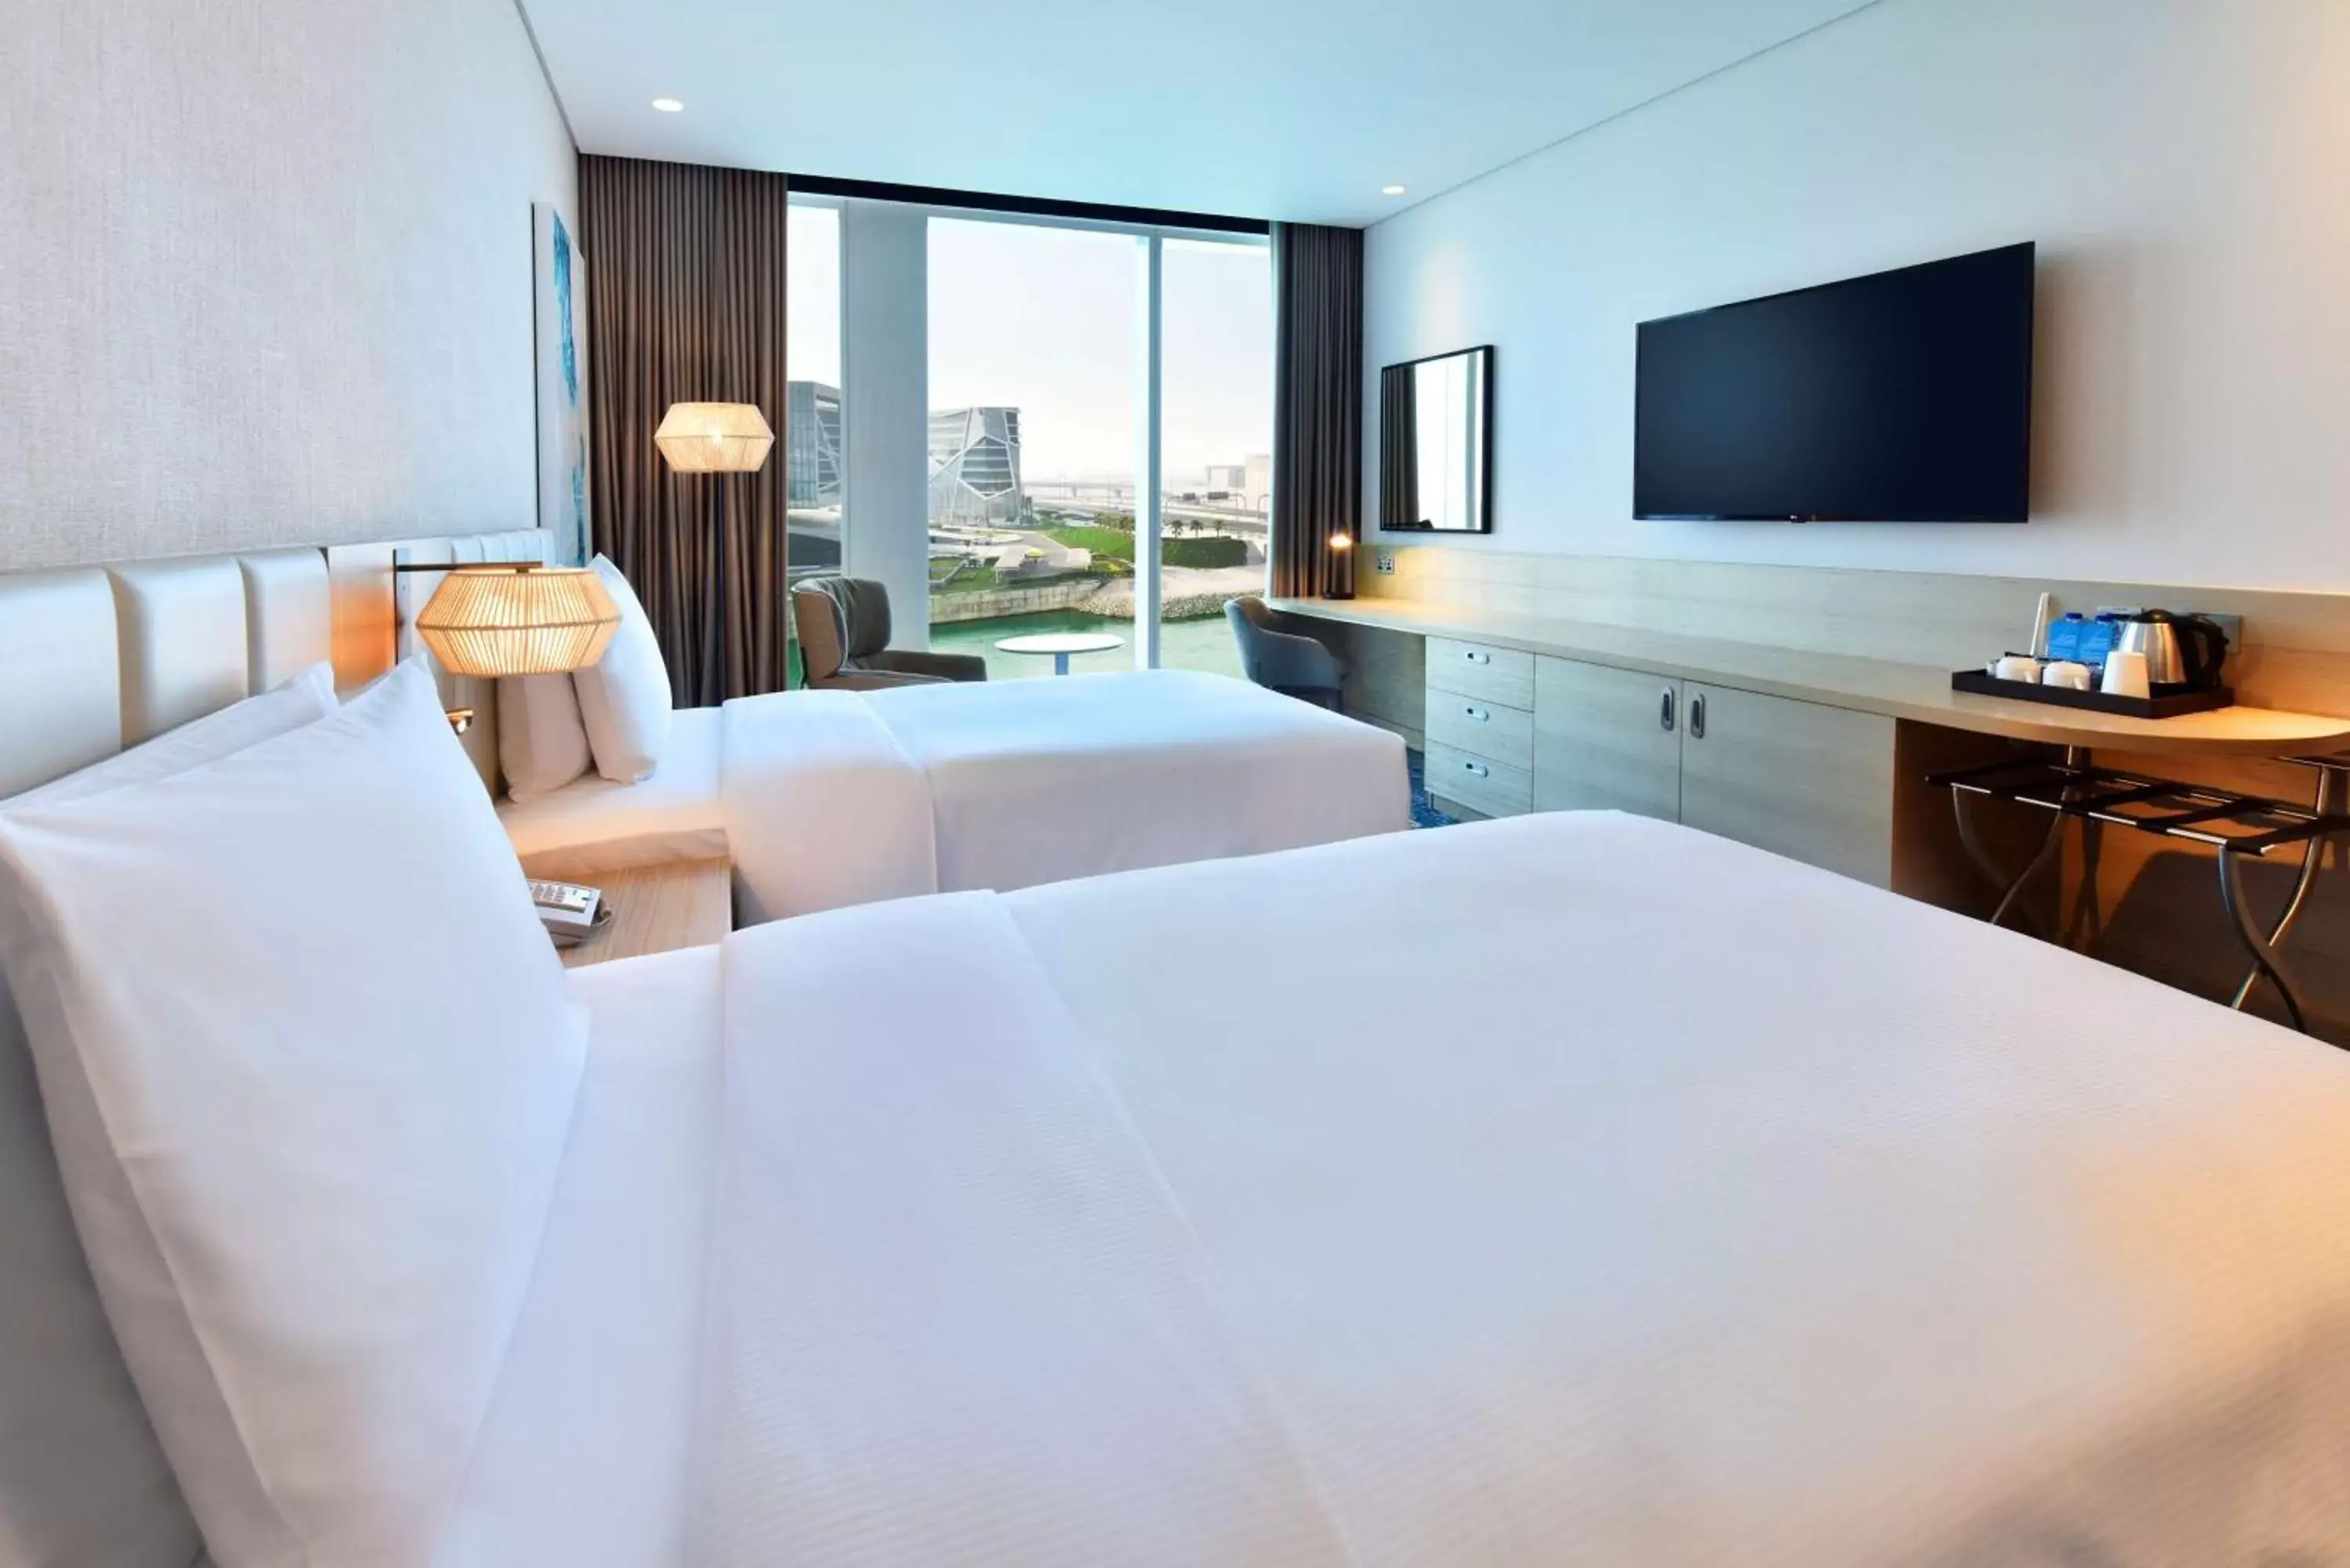 Bedroom, TV/Entertainment Center in Hilton Garden Inn Bahrain Bay